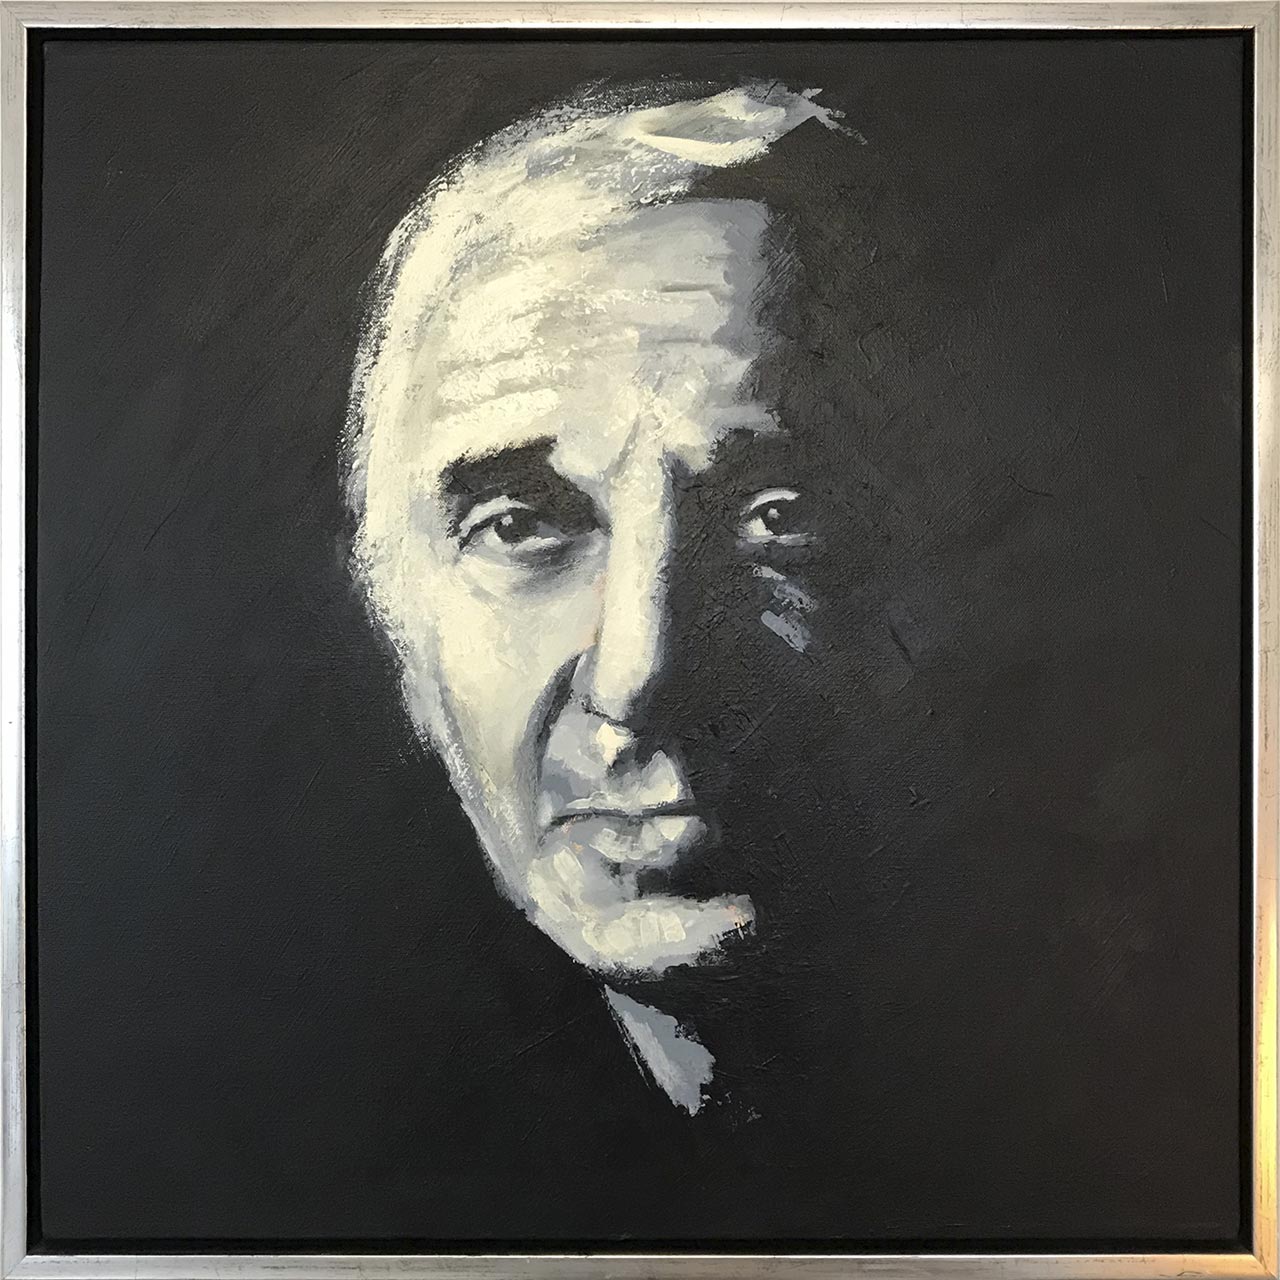 Portrætmaleriet af Charles Aznavour er udført af portrætmaler Peter Simonsen. Dansk portrætmaler, abstrakt ekspressionist.